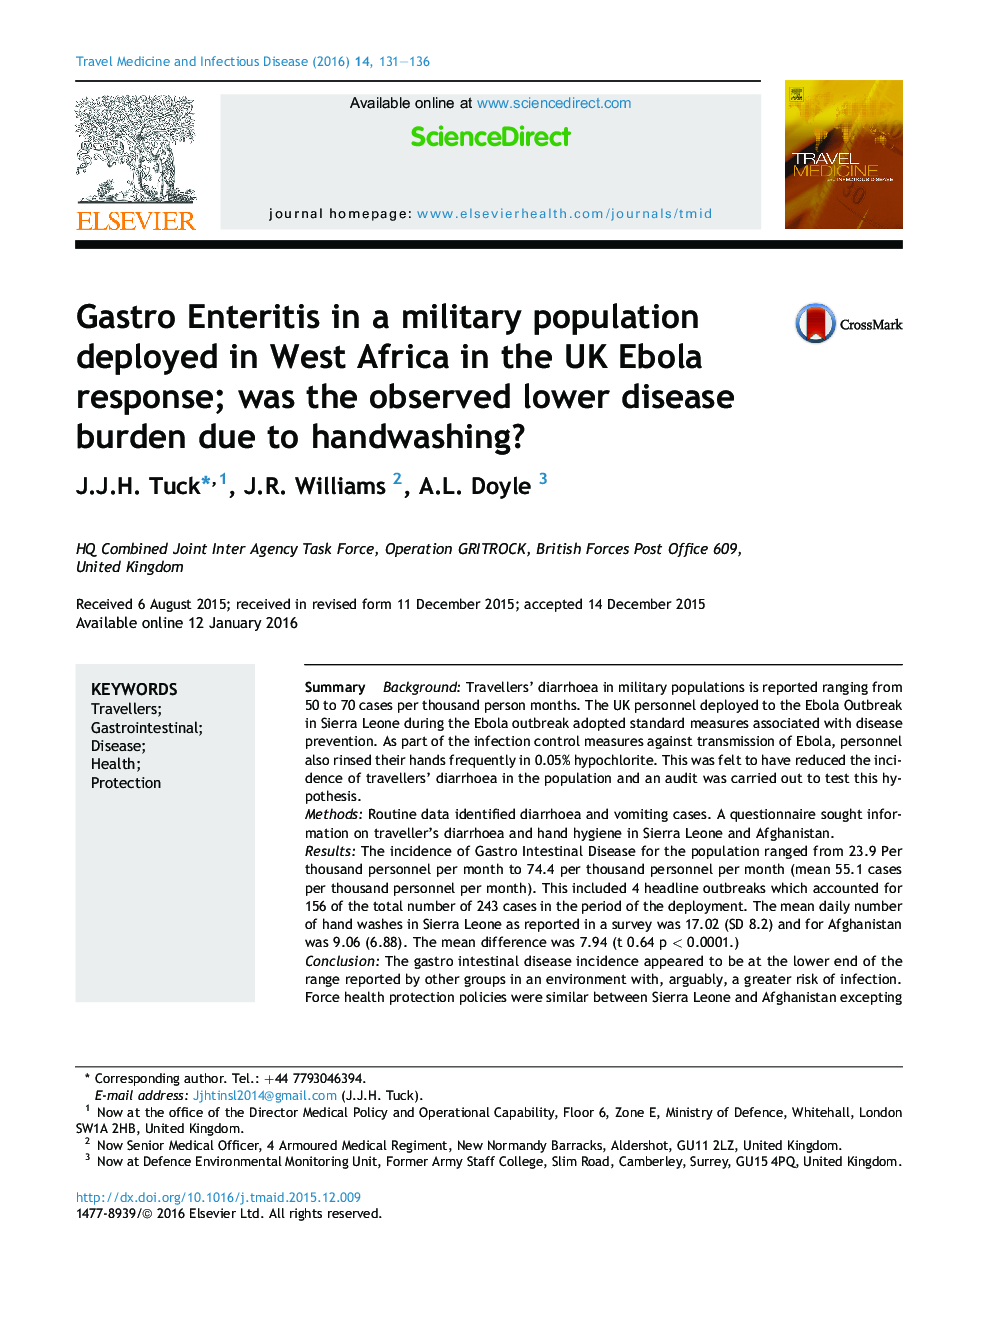 التهاب های گوارشی در یک جمعیت نظامی مستقر در غرب آفریقا در واکنش ابولا در بریتانیا؛ آیا بار مشاهده کمتر بیماری به علت شستن دست ها بود؟